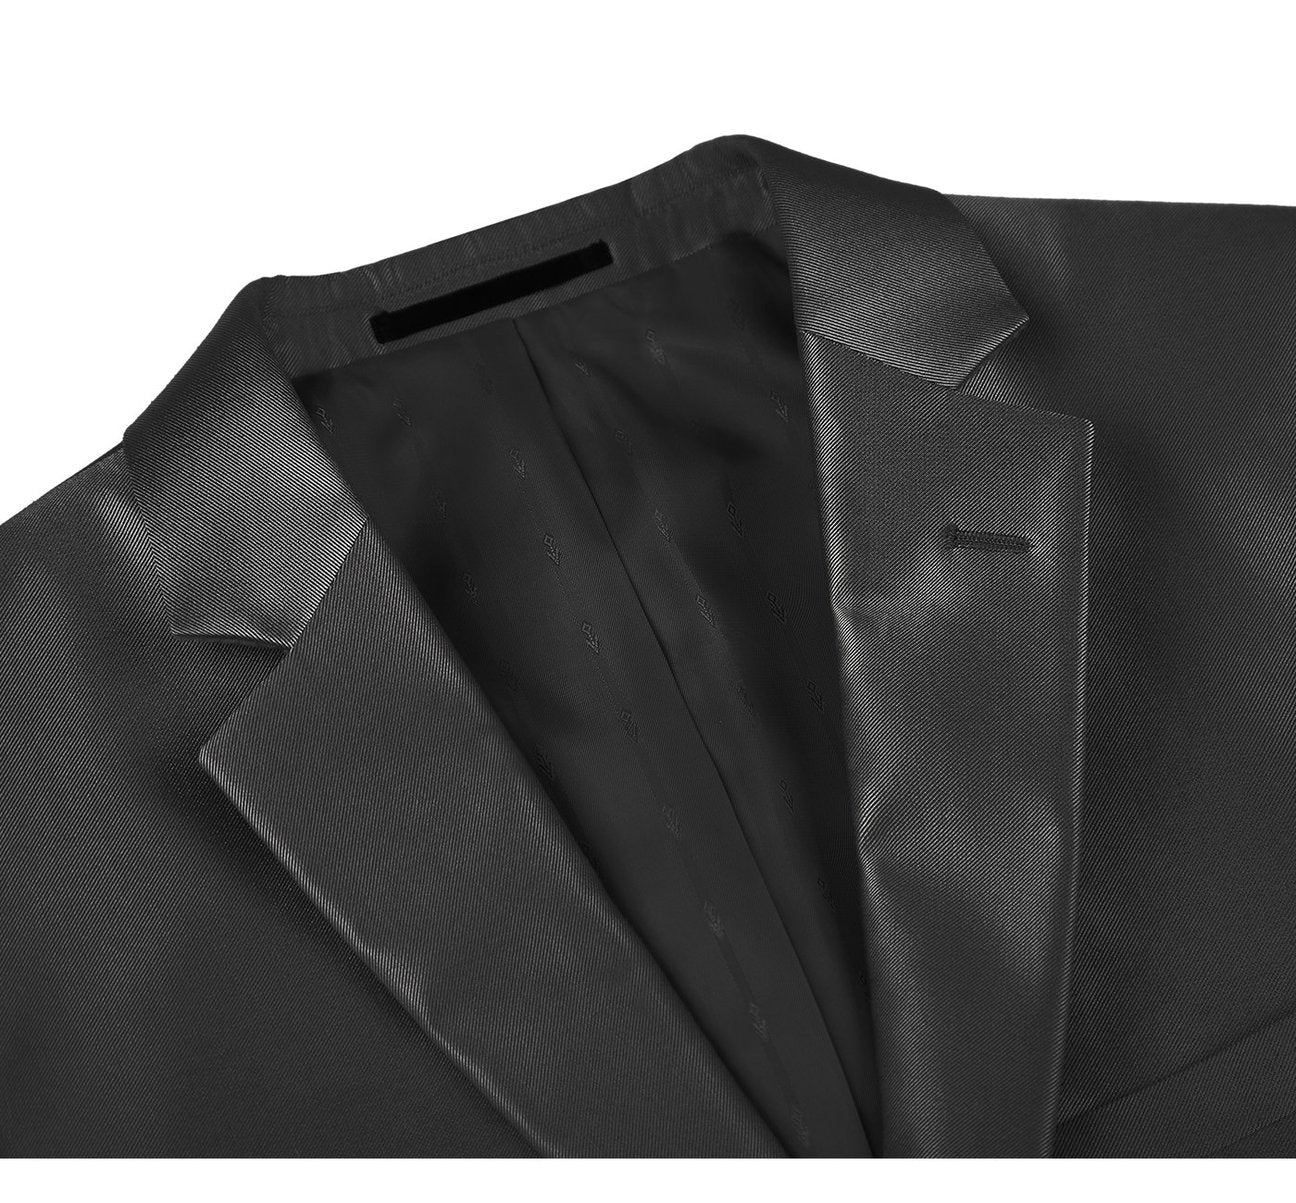 RENOIR Sharkskin Slim Fit Italian Styled Two Piece Suit 207-1